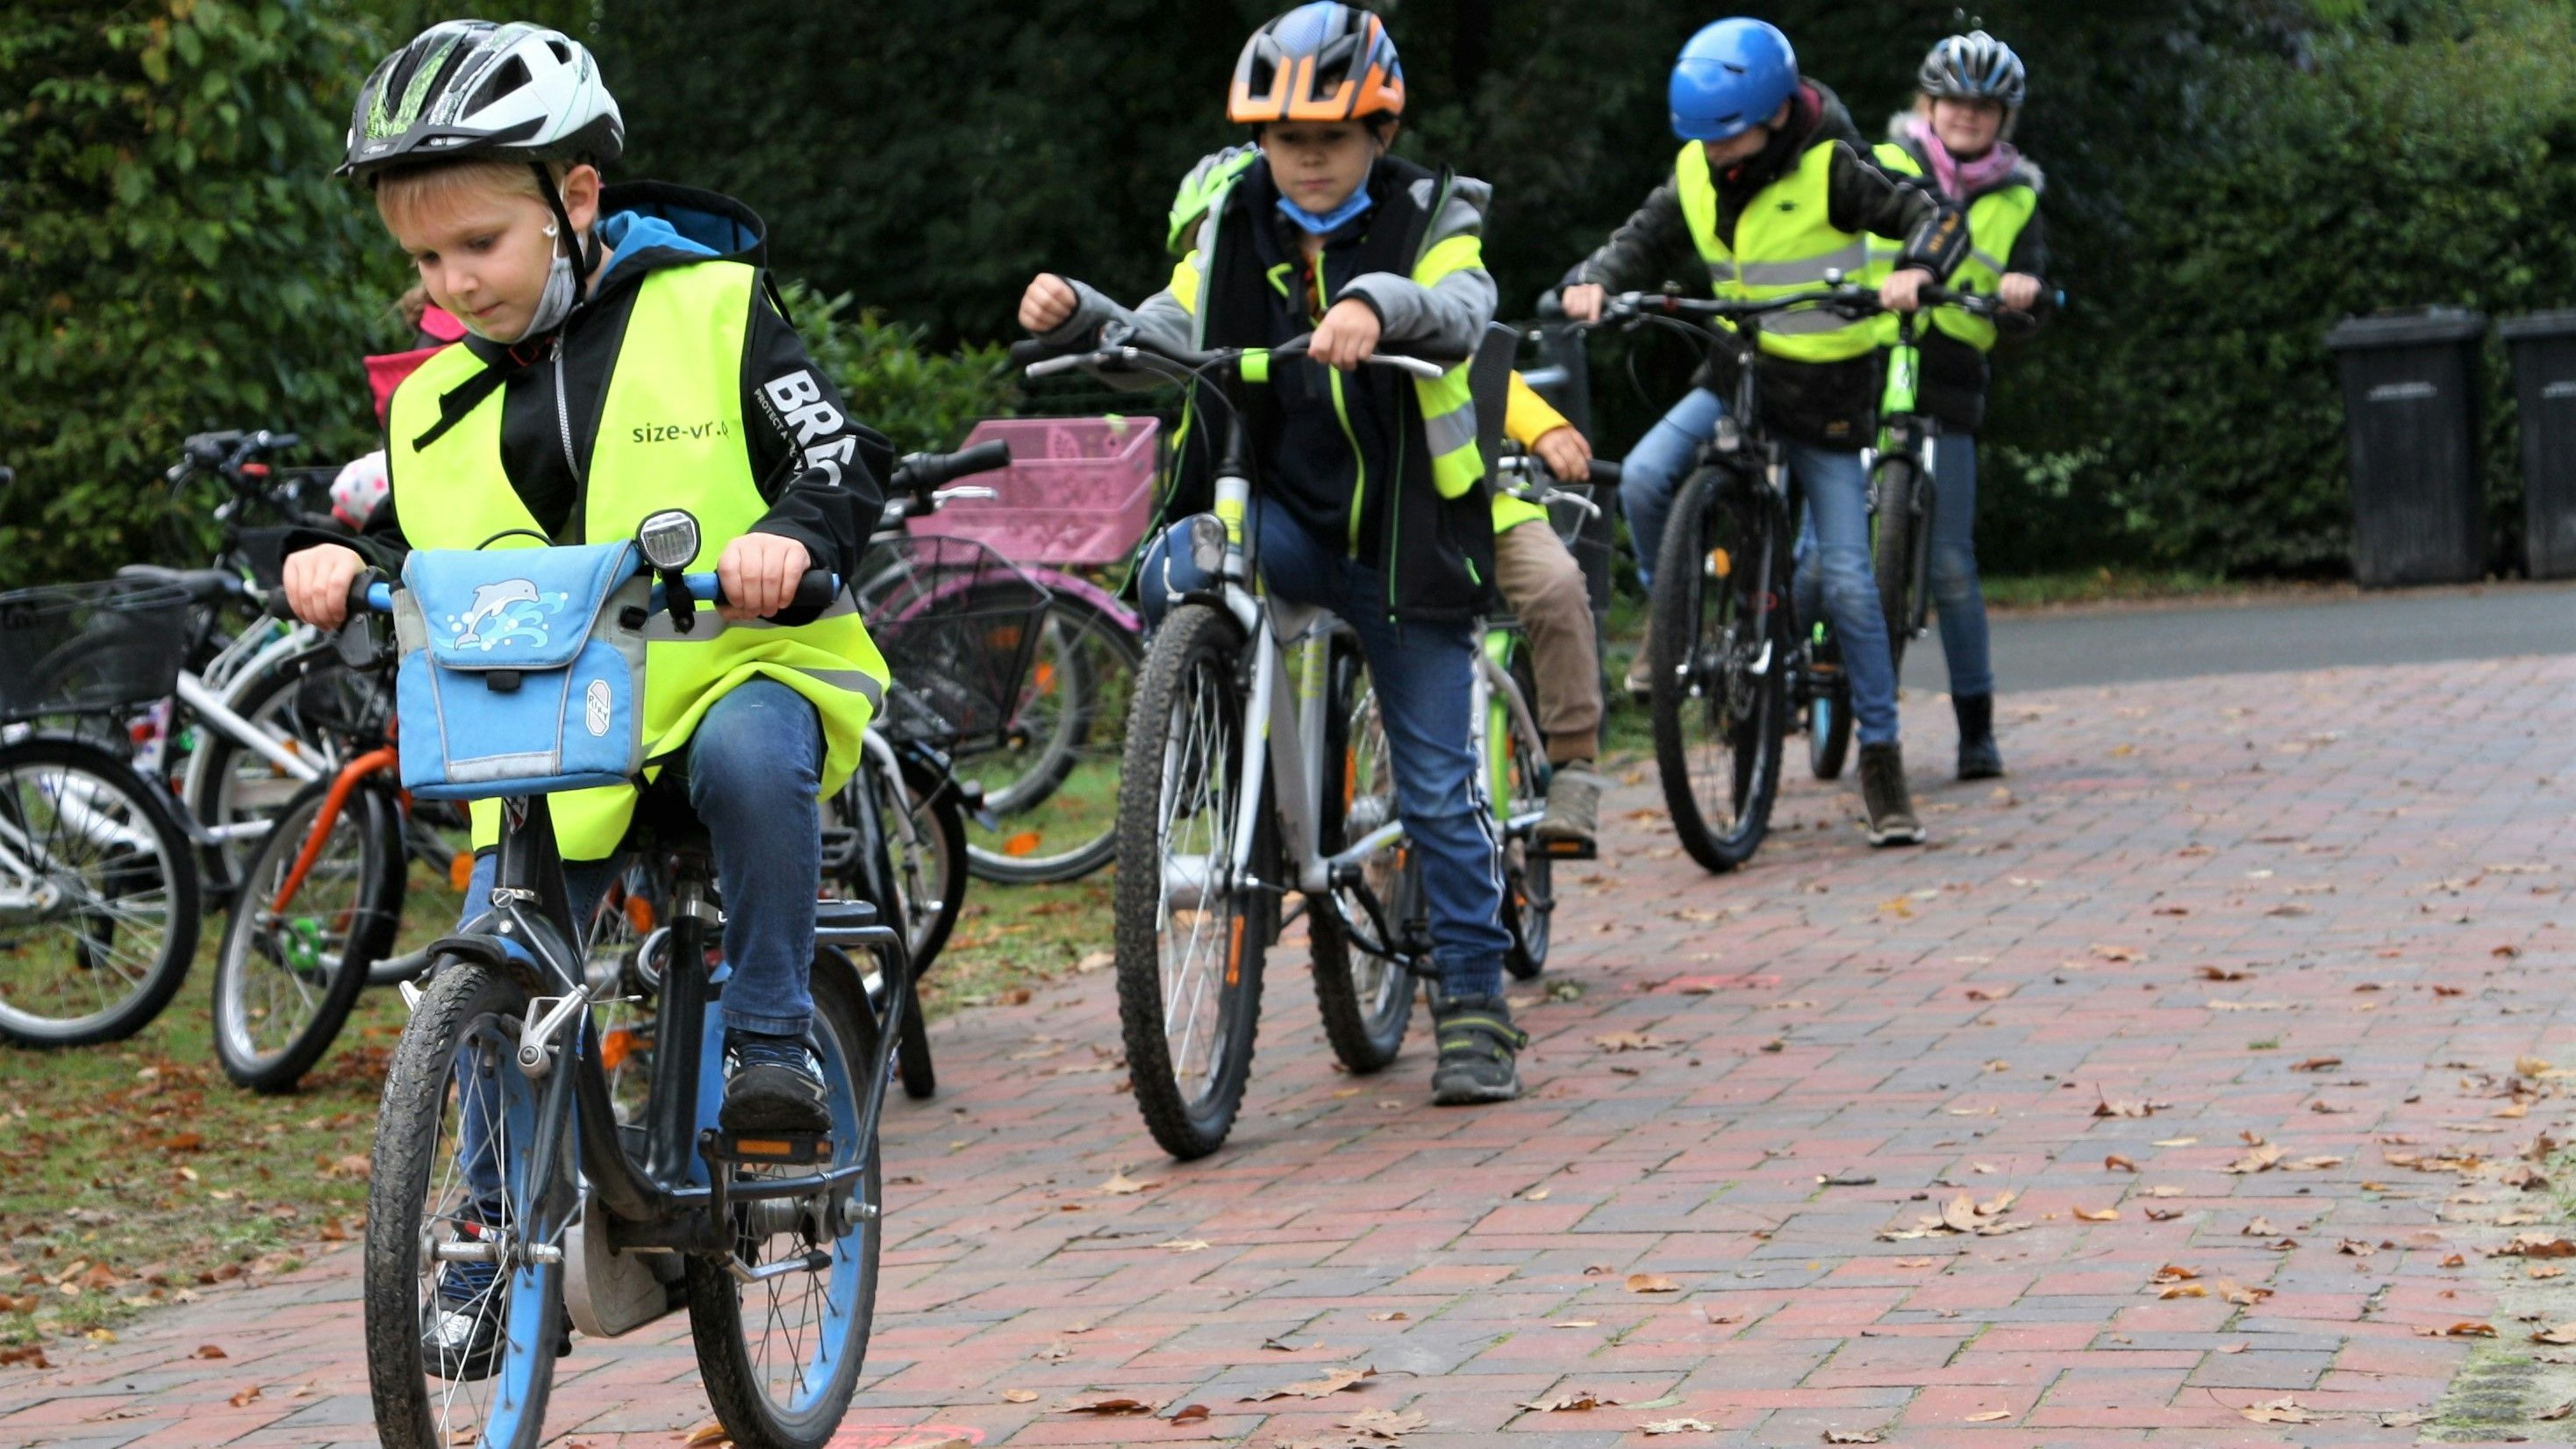 Sicher über die Wippe: Die Schulkinder zeigen am Fahrradtag im Parcours ihr sicheres Können. Foto: Pille